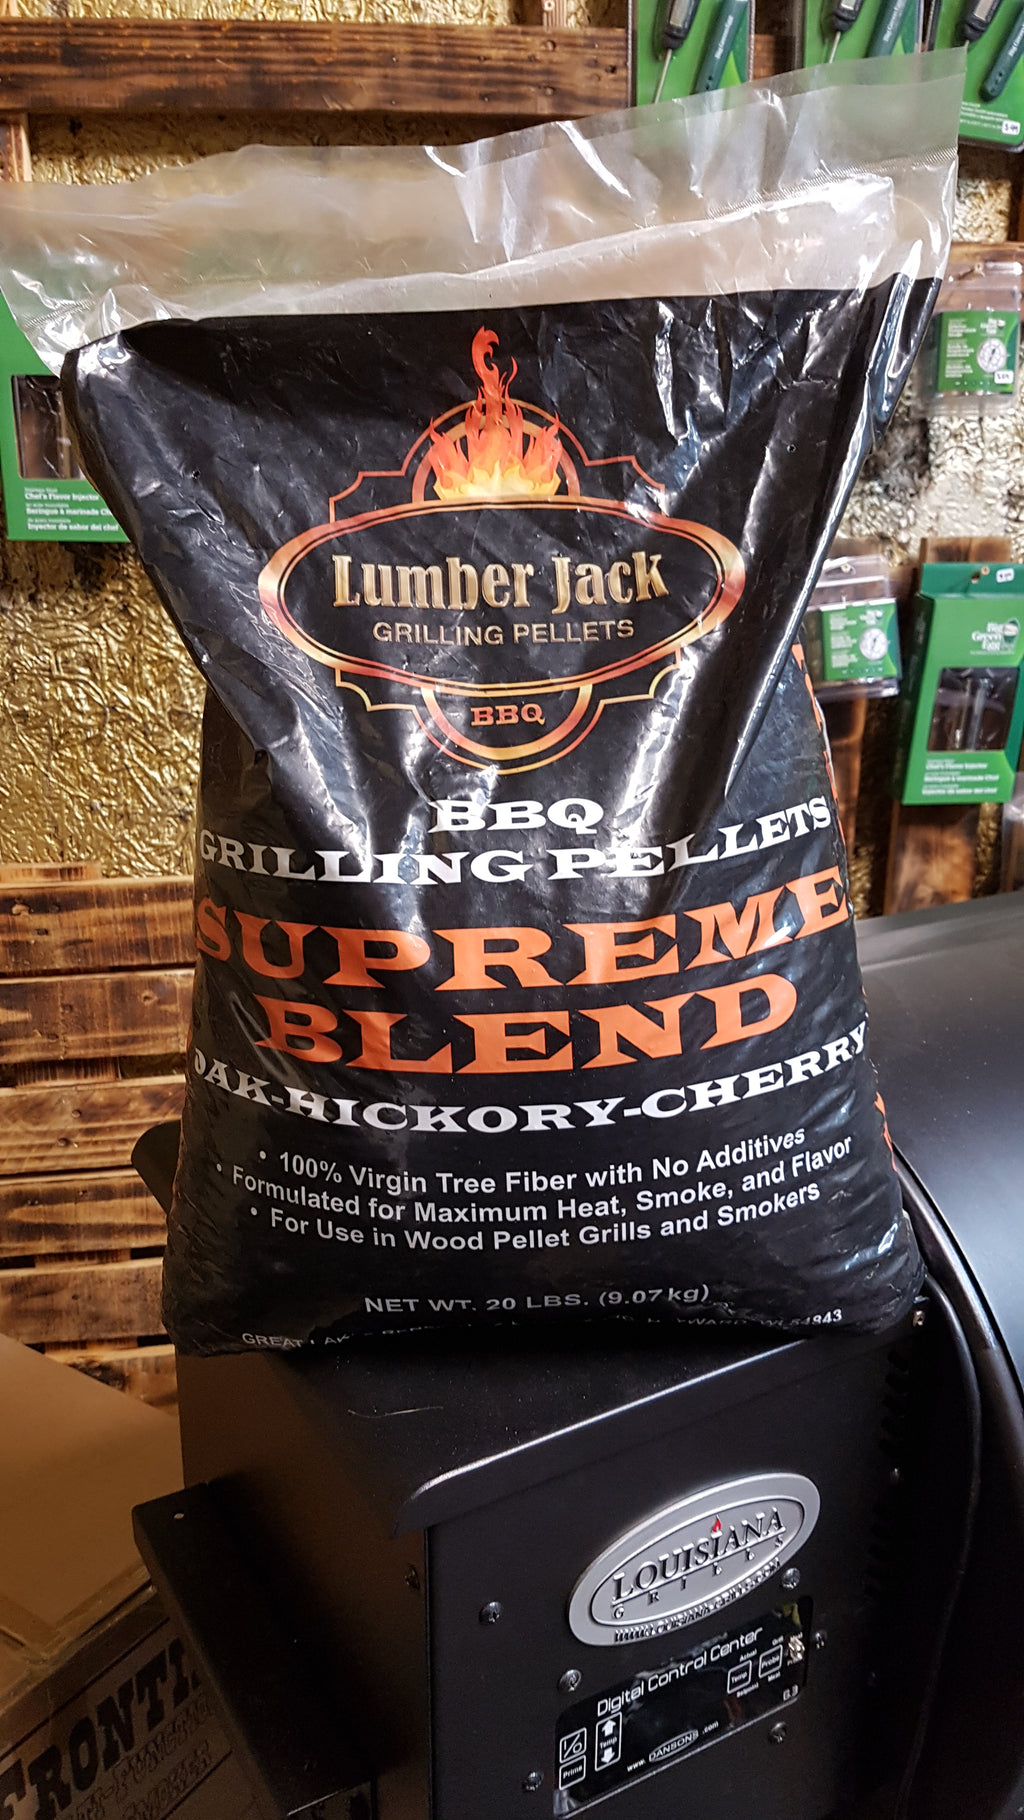 Supreme Blend Grilling Pellets by Lumber Jack